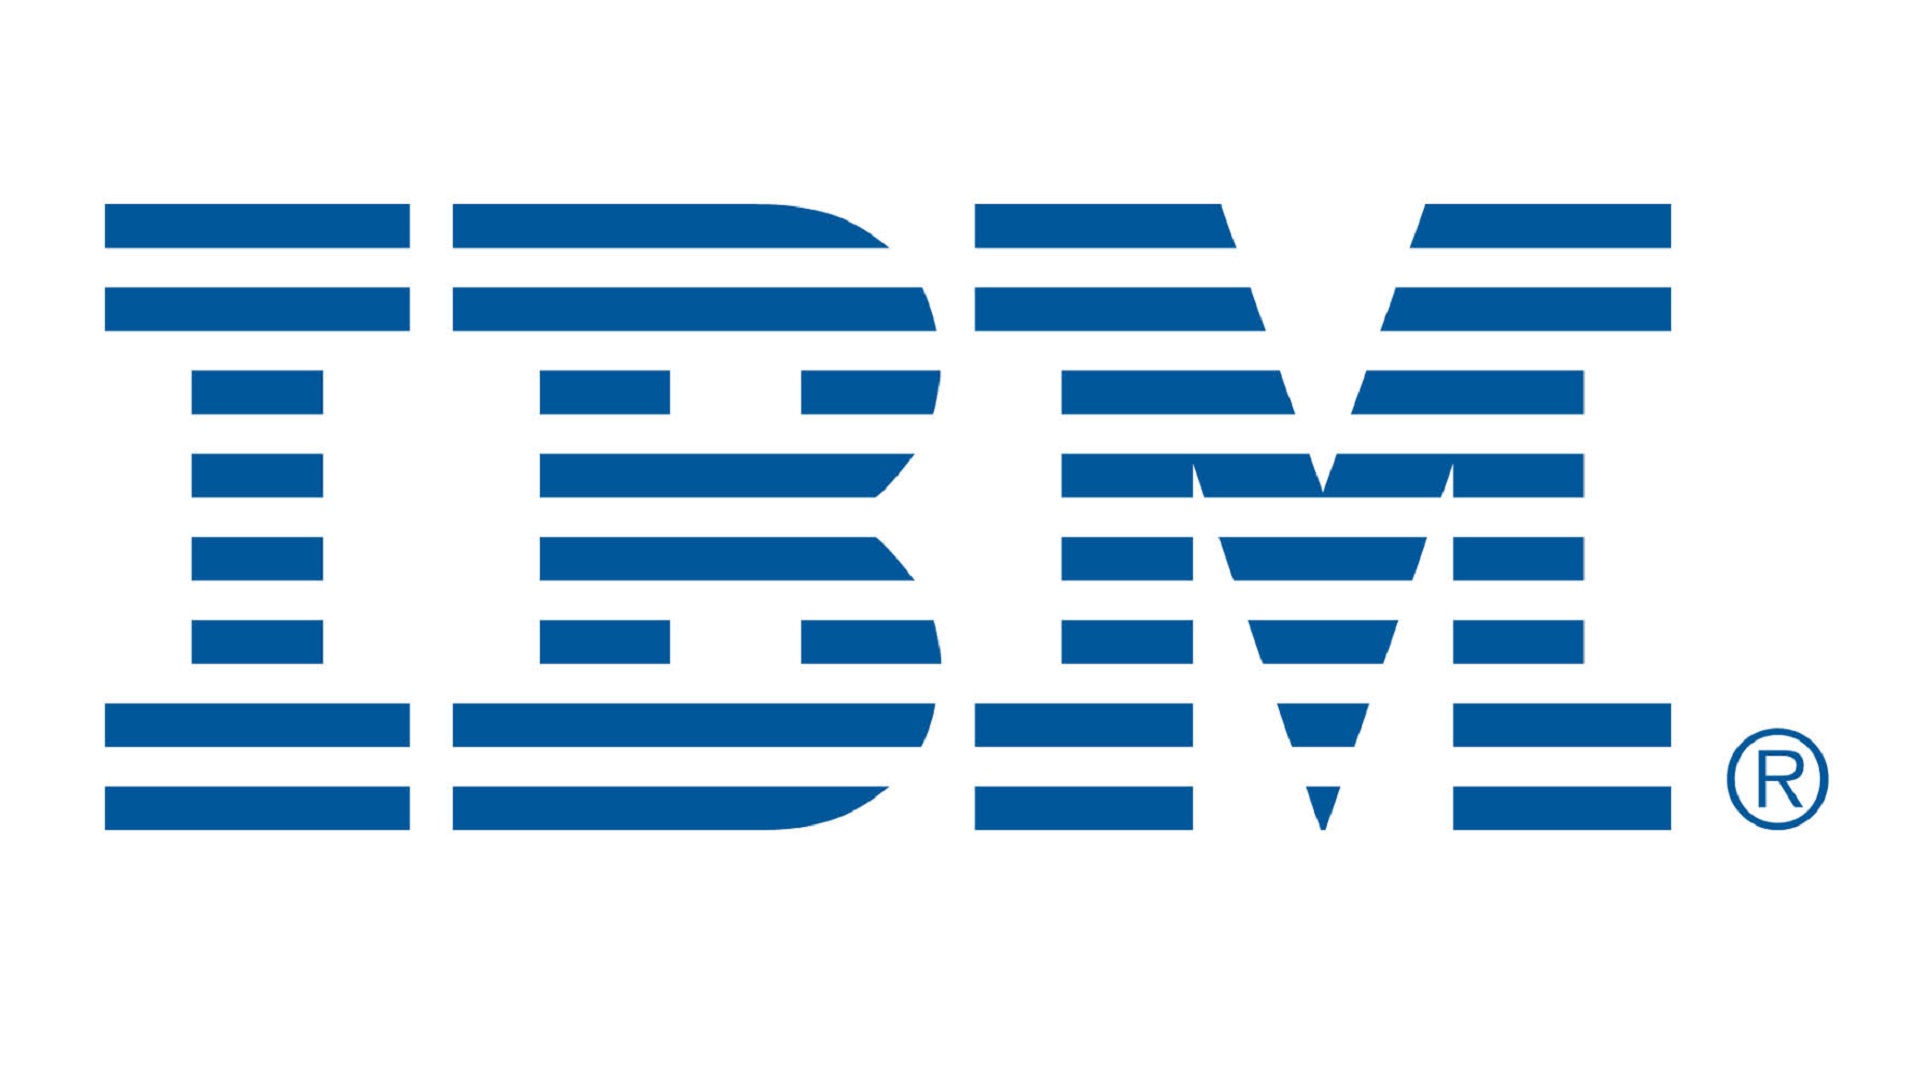 IBM continua a impulsionar a sua plataforma de Dados e IA watsonx